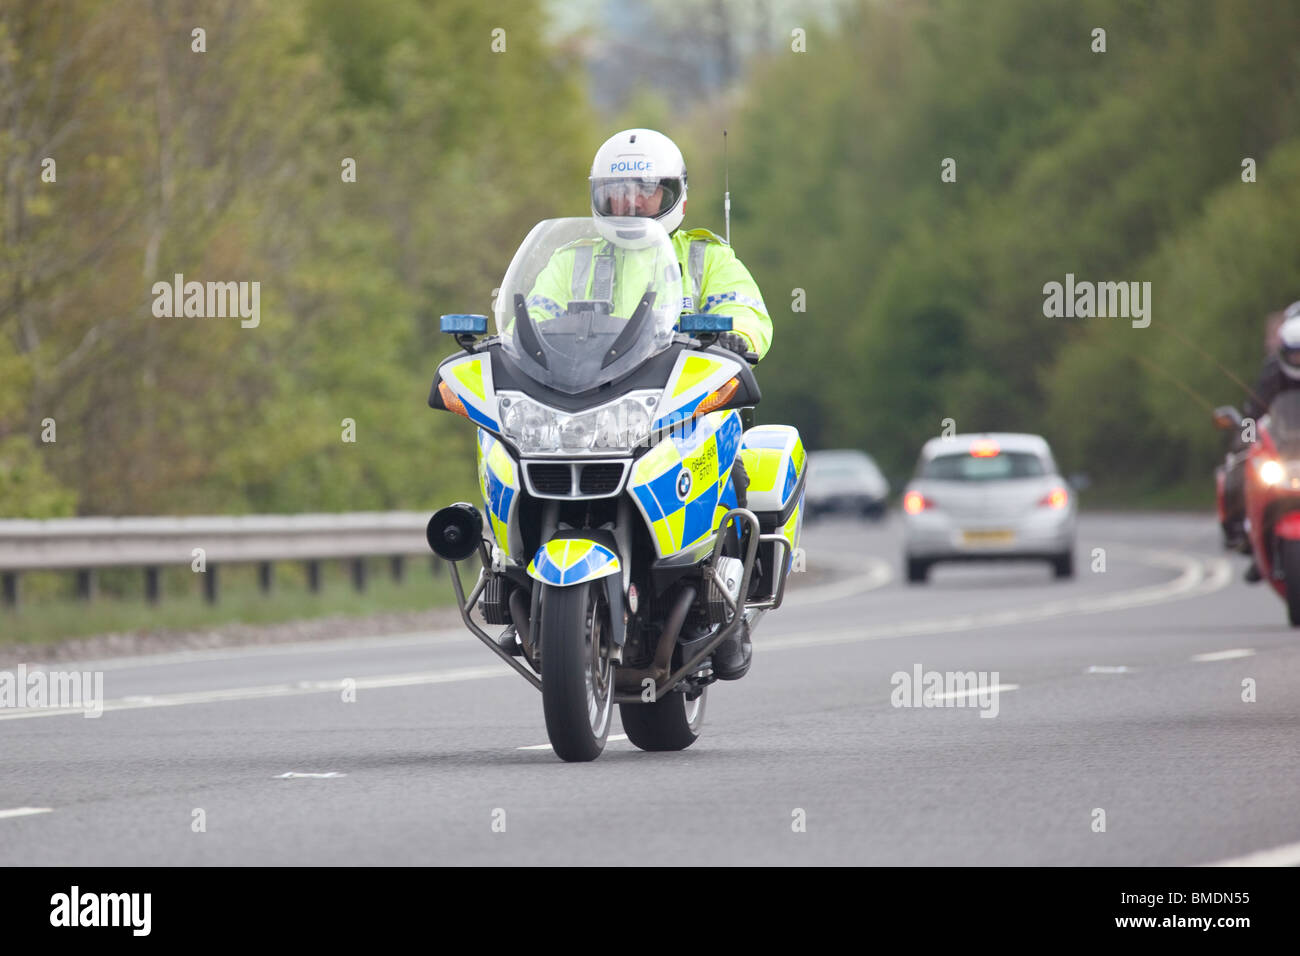 Moto de police motorcyclist riding motorbike sur dual carriage way près de Dumfries UK Banque D'Images